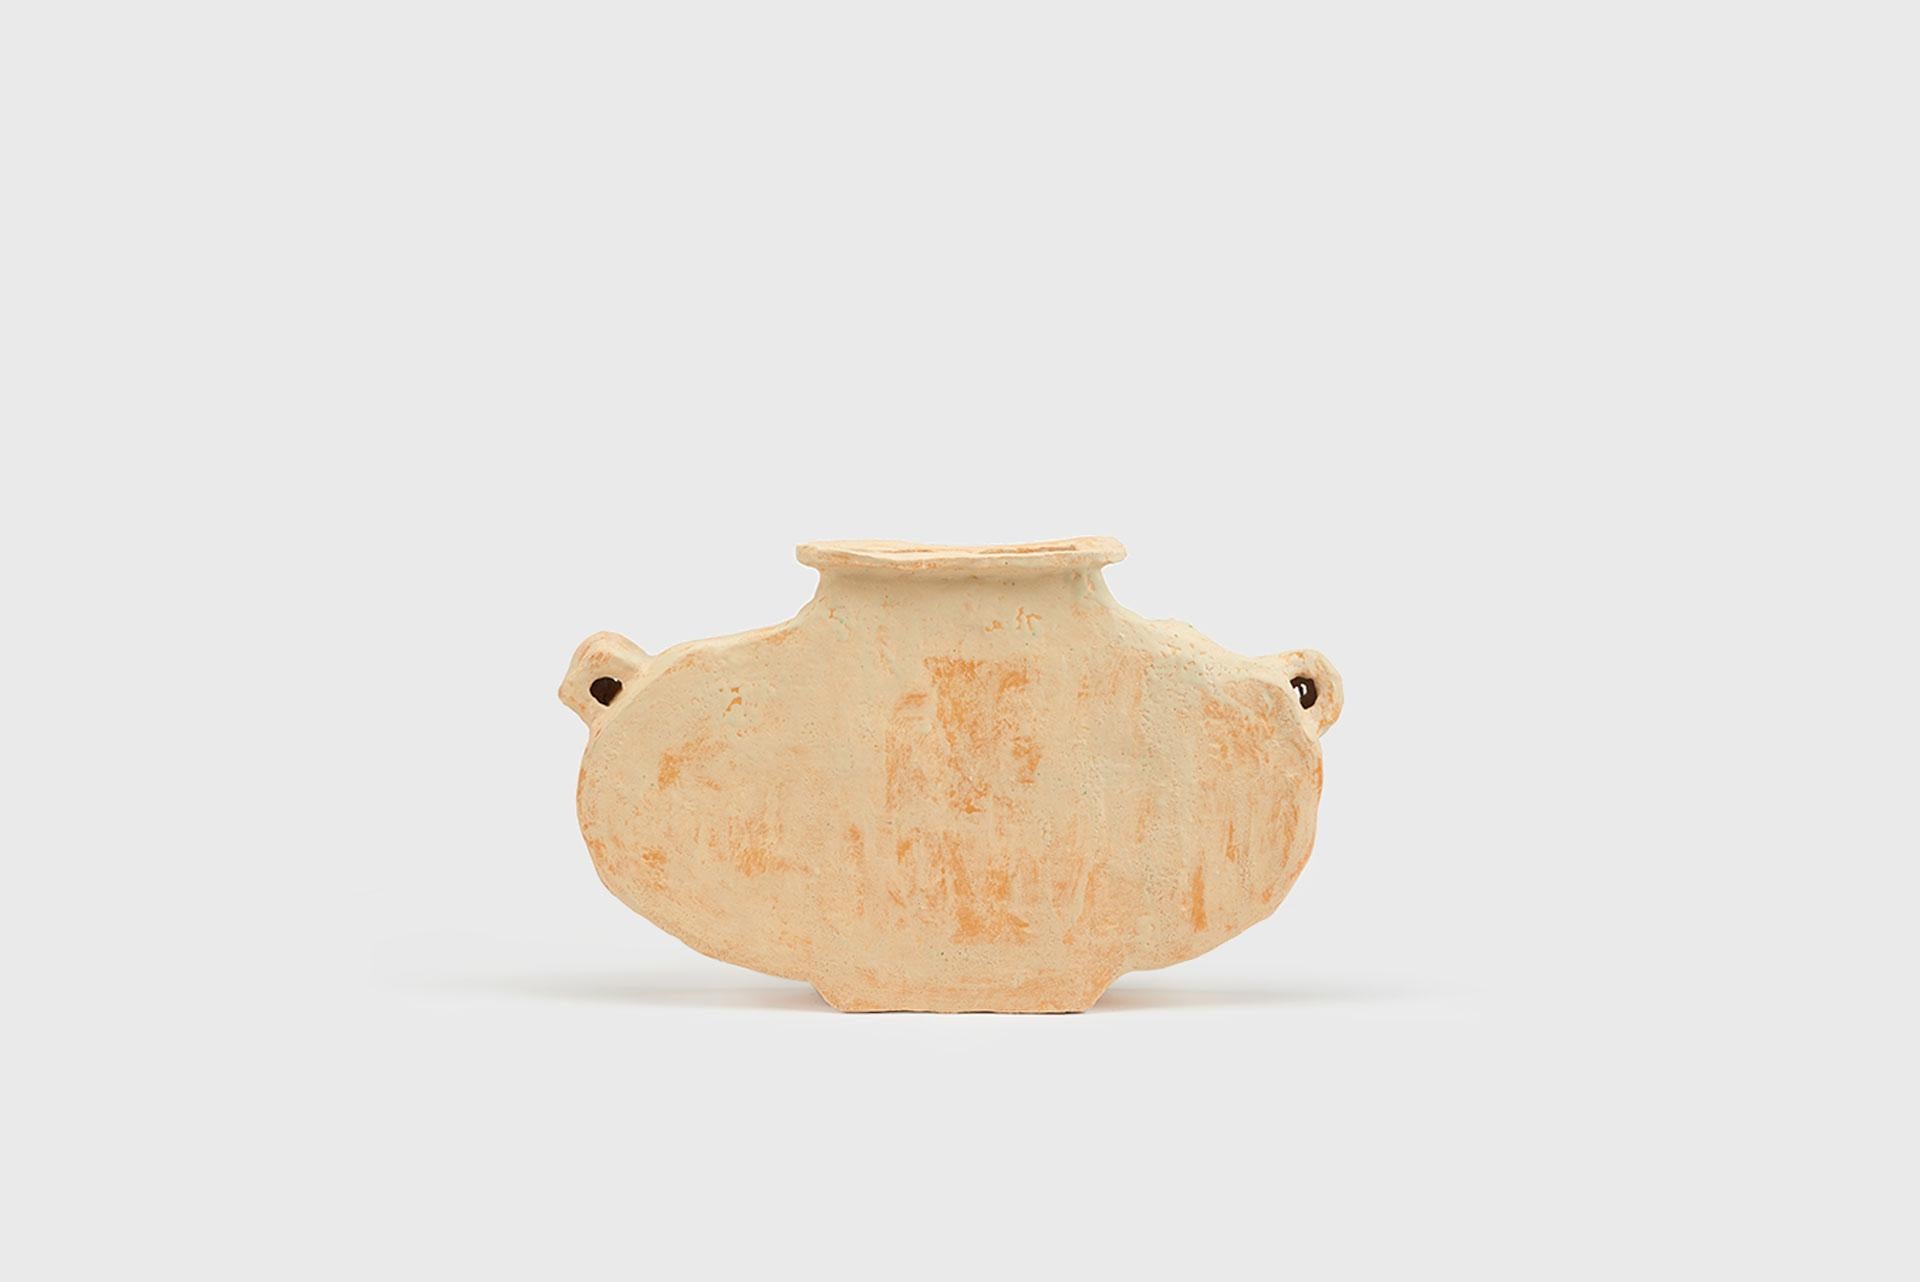 Ceramic vase model “Efir”.
From the series 